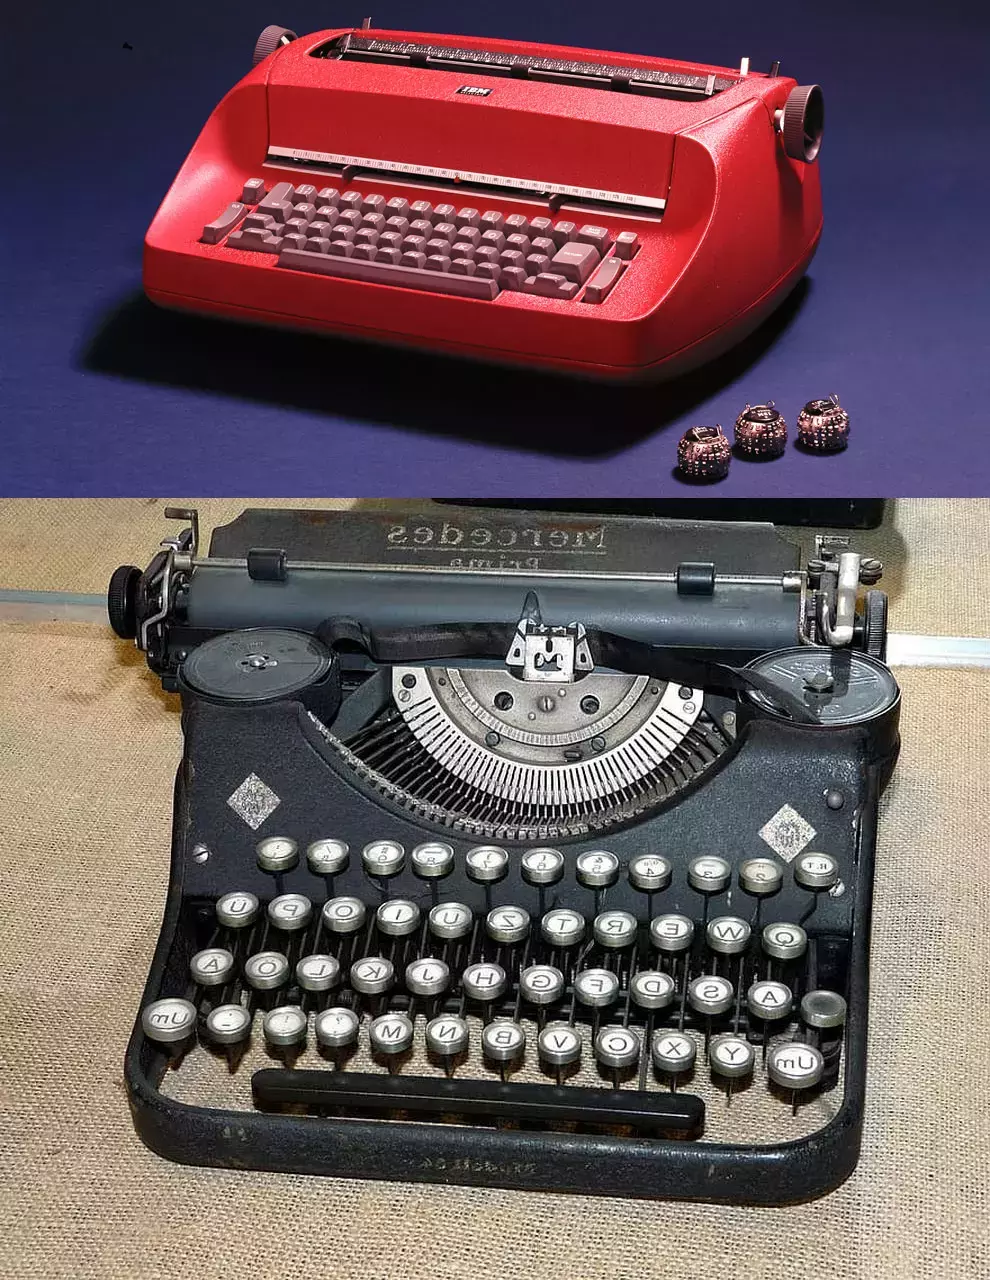 Máquina de escribir IBM Selectric comparada con una máquina de escribir mecánica utilizada en las embajadas soviéticas.